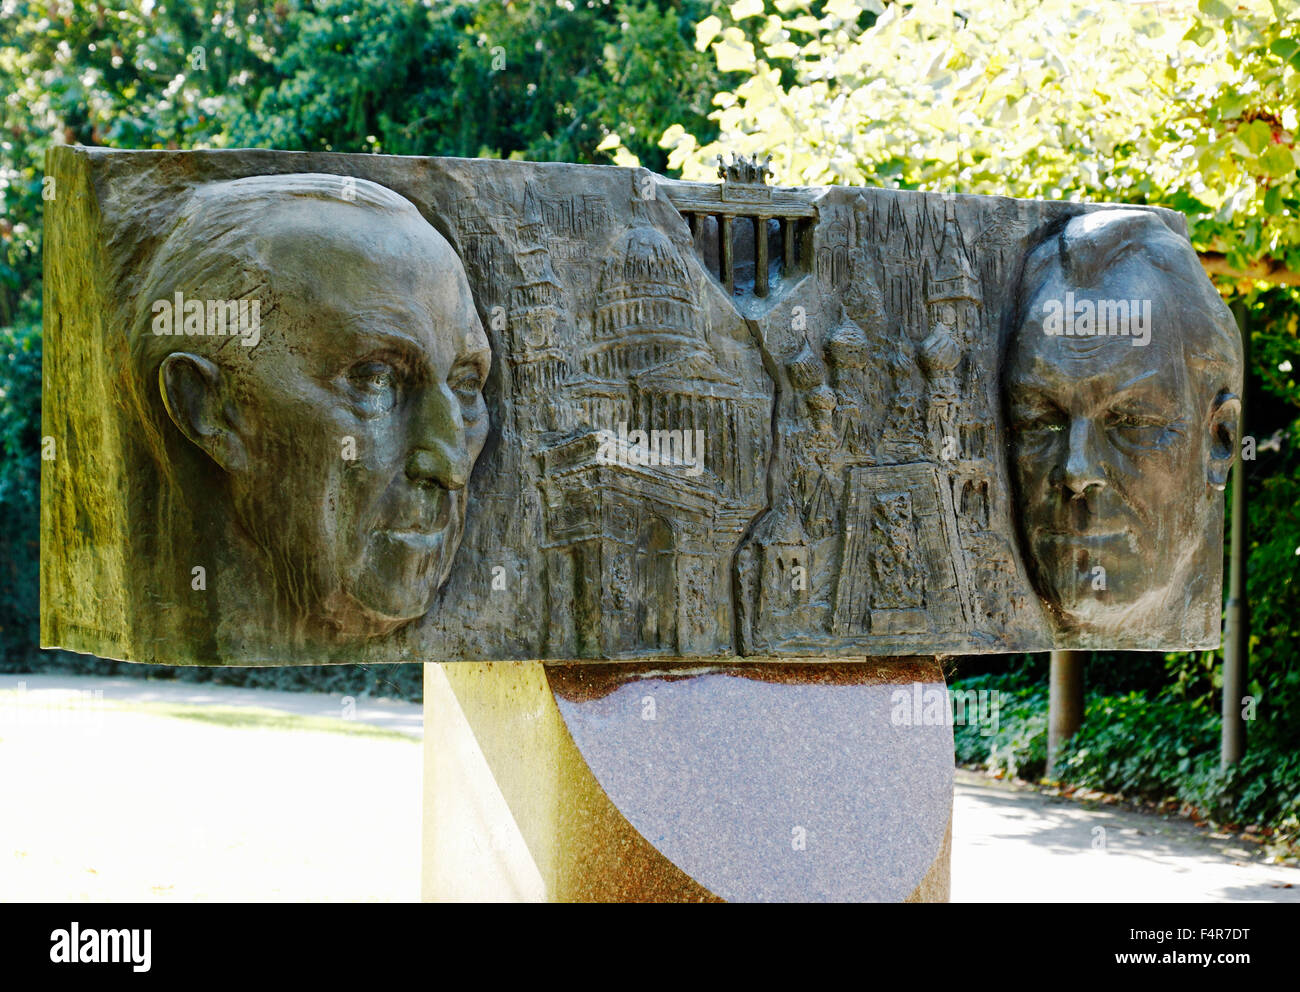 Kanzlerdenkmal fuer die Bundeskanzler Konrad Adenauer und Willy Brandt, Bronzerelief  von Grigori D. Yastrebenetskiy in Grevenbroich, Niederrhein, Nor Stock Photo